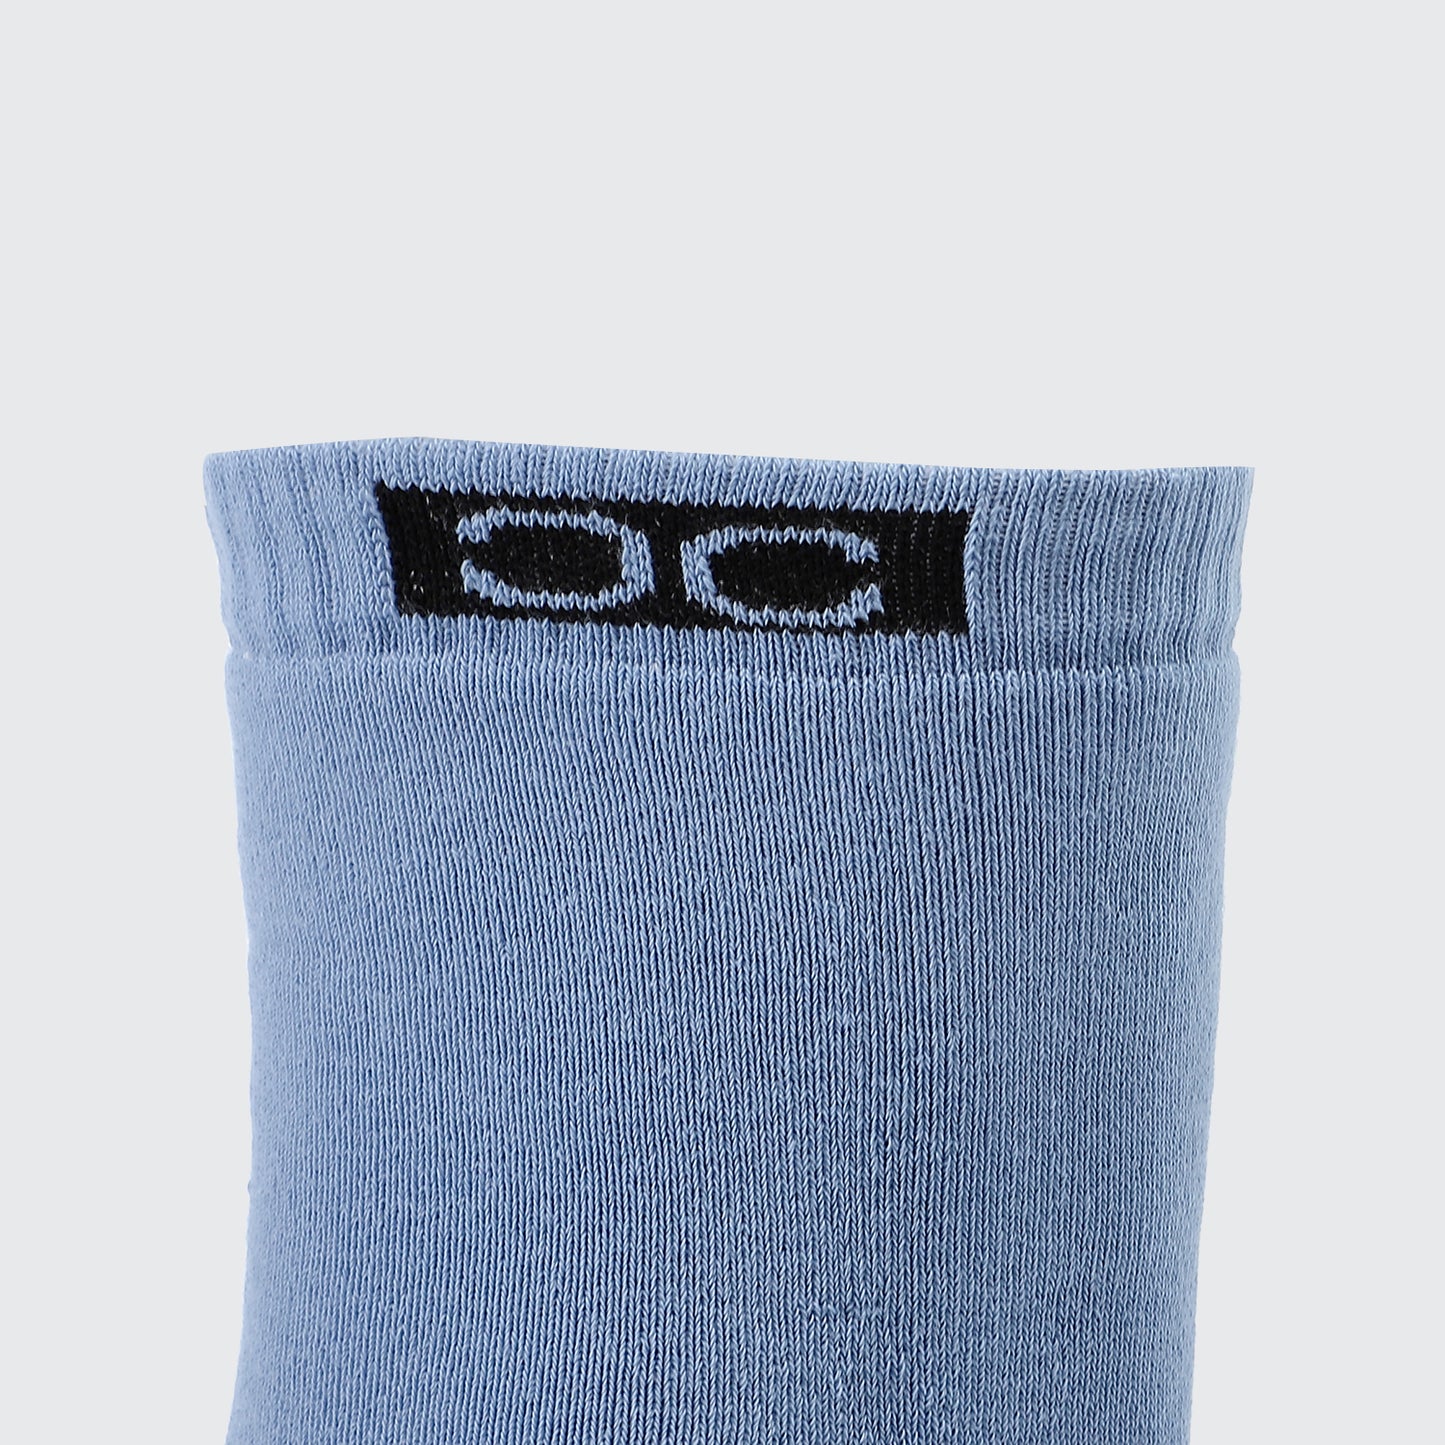 Essential Thermal Mid Calf Men Socks - Bundle Of 6